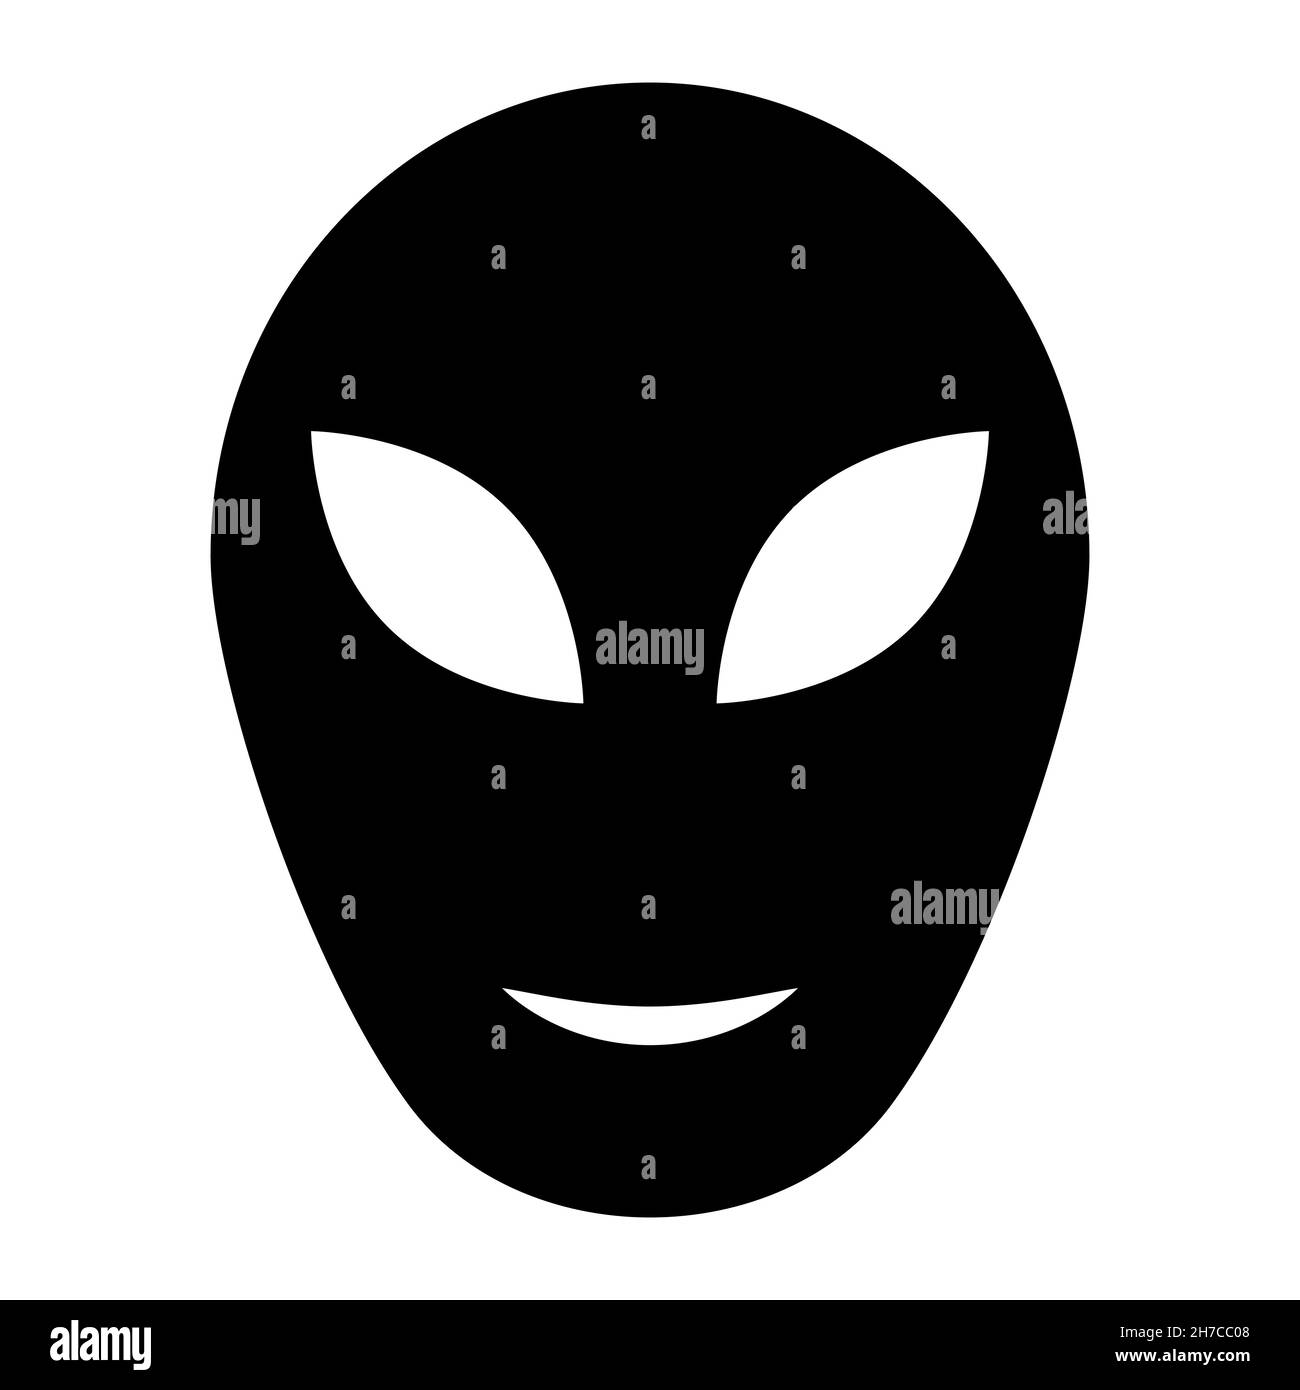 Alien head sign, ufo alien humanoid icon stock illustration Stock Vector